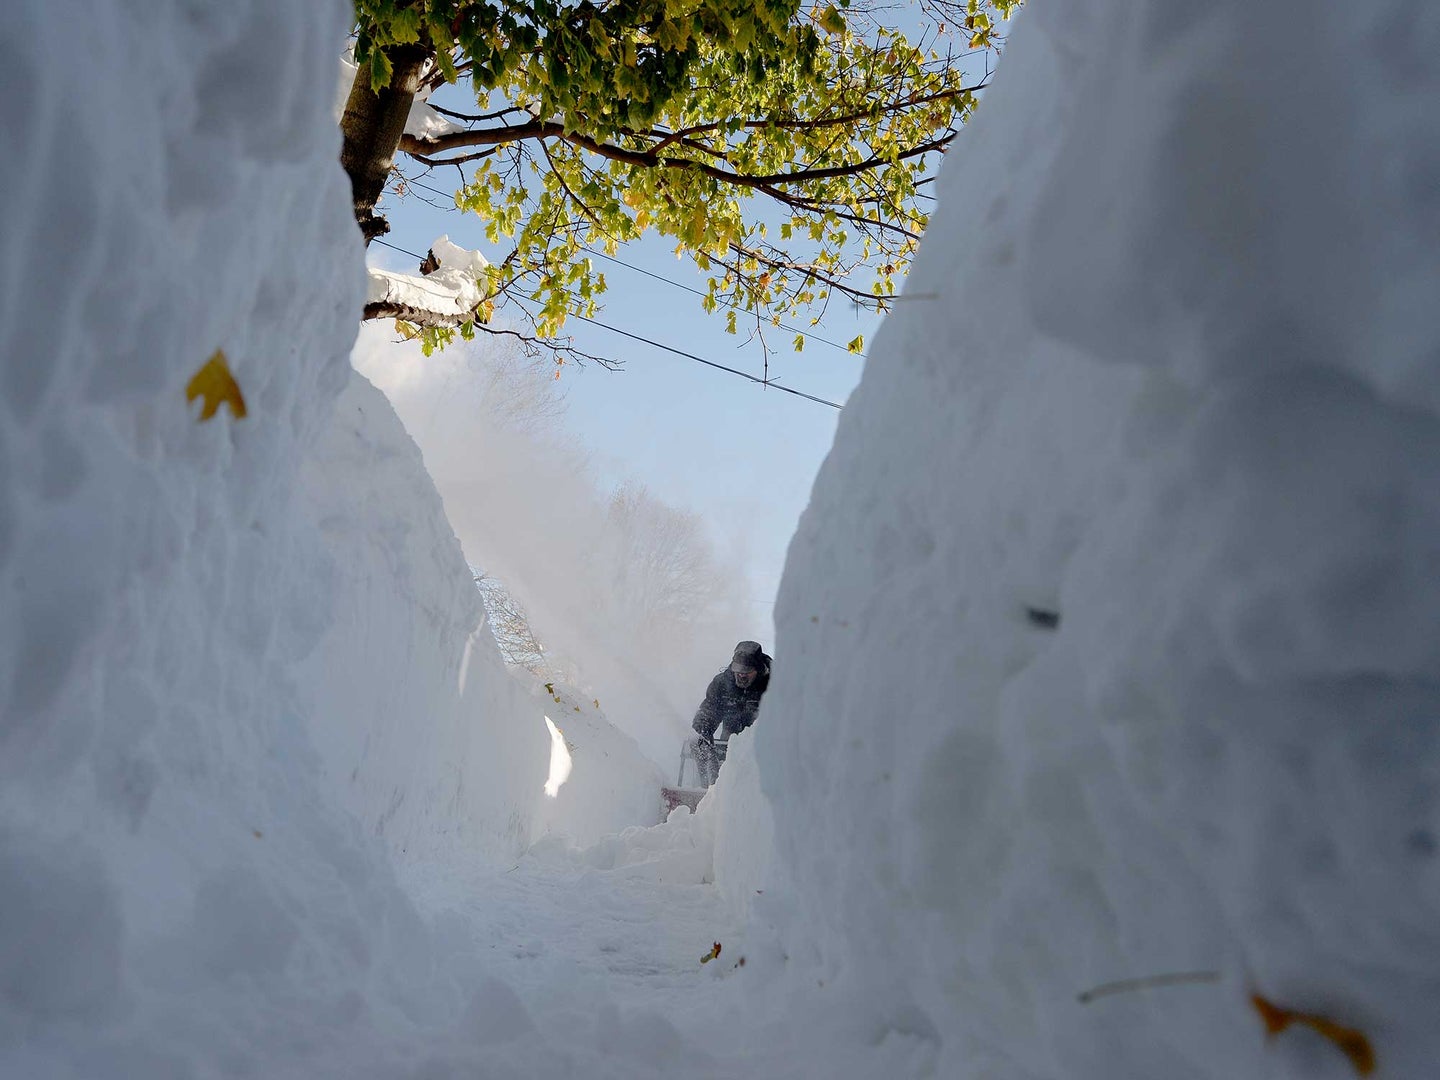 Snow in Buffalo, NY